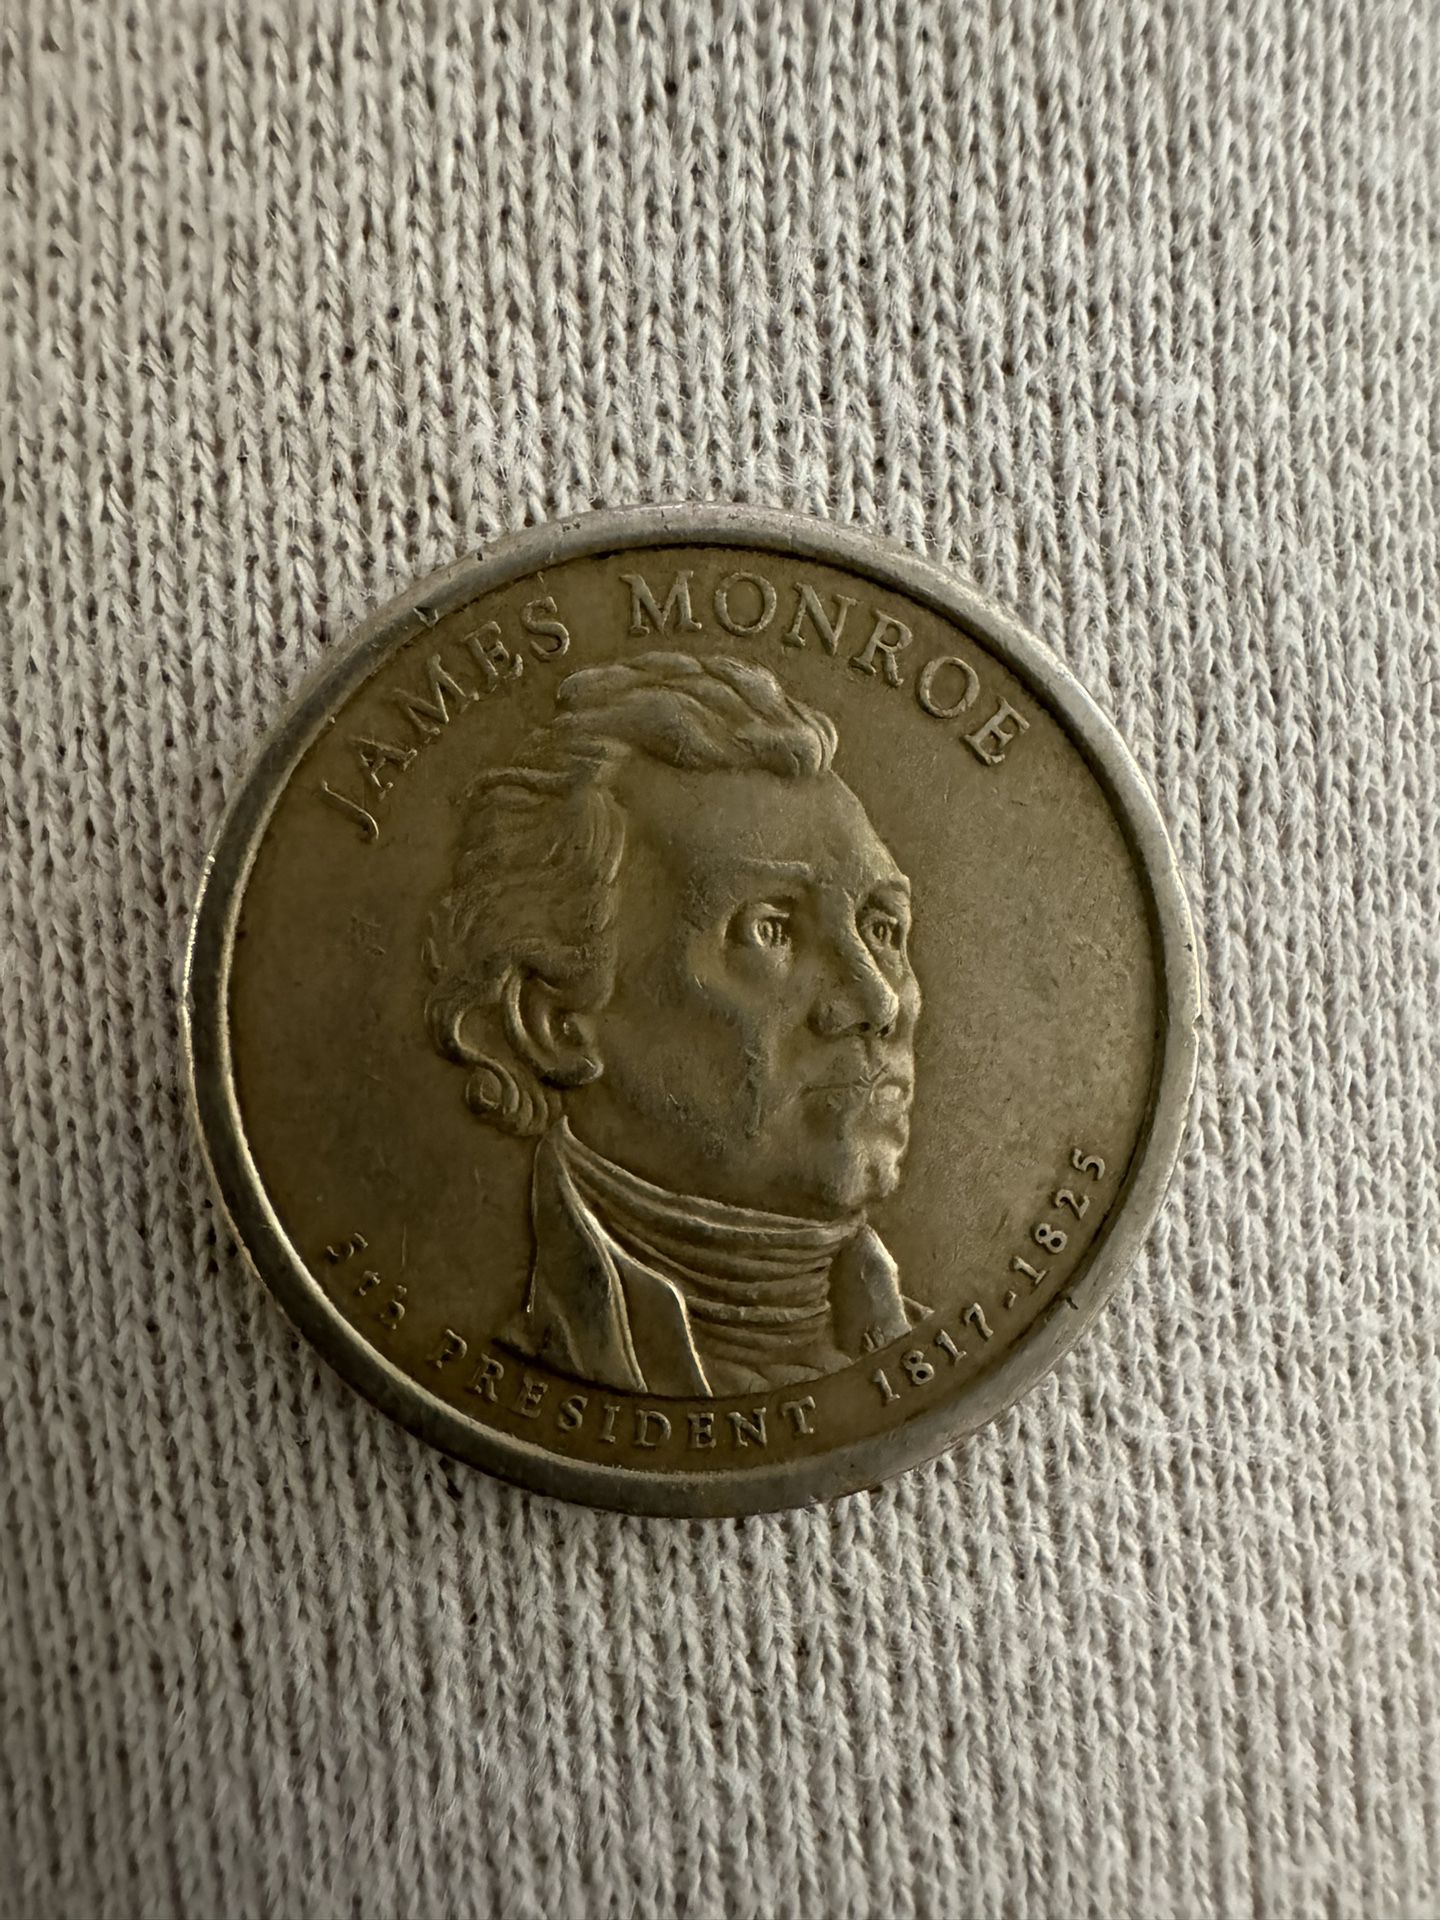 James Monroe Dollar Coin 